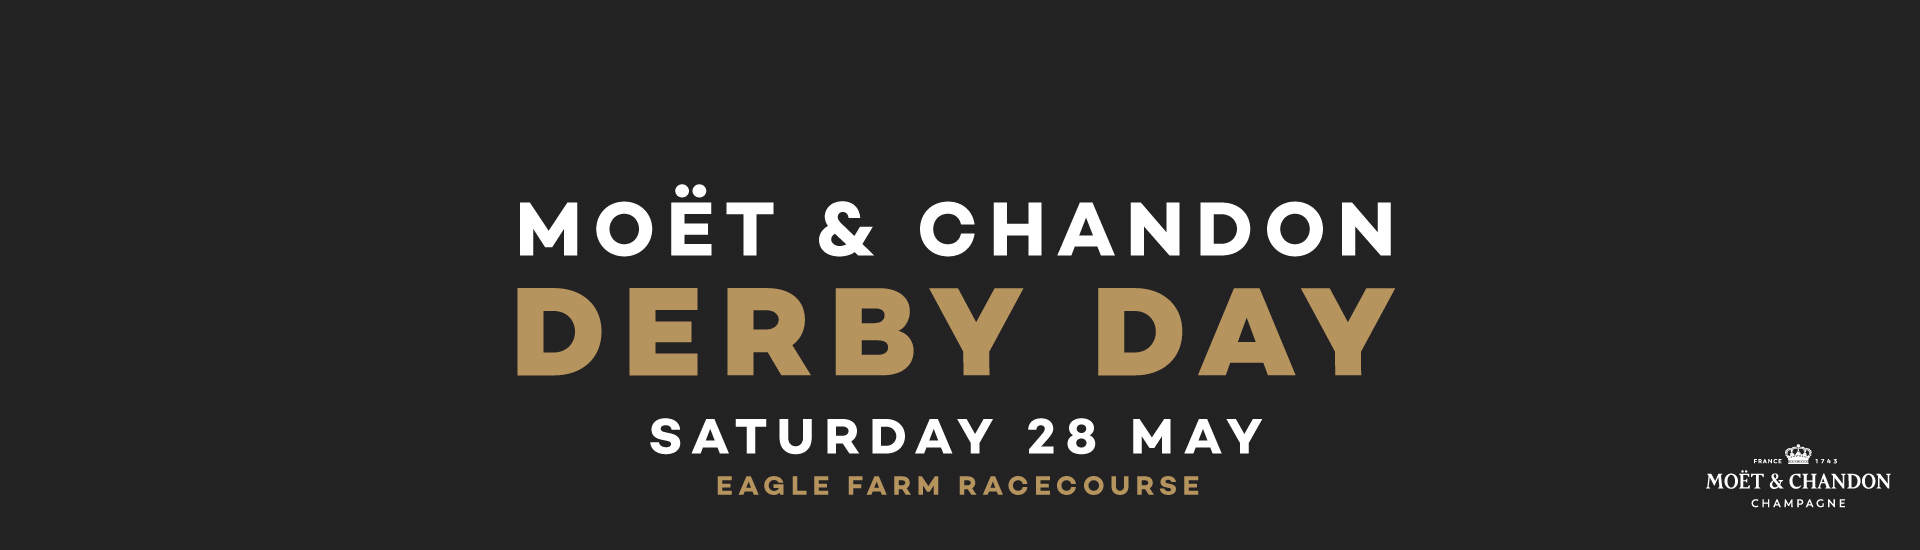 04_DerbyDay_Web-banner-1920x550_sponsor | Brisbane Racing Club